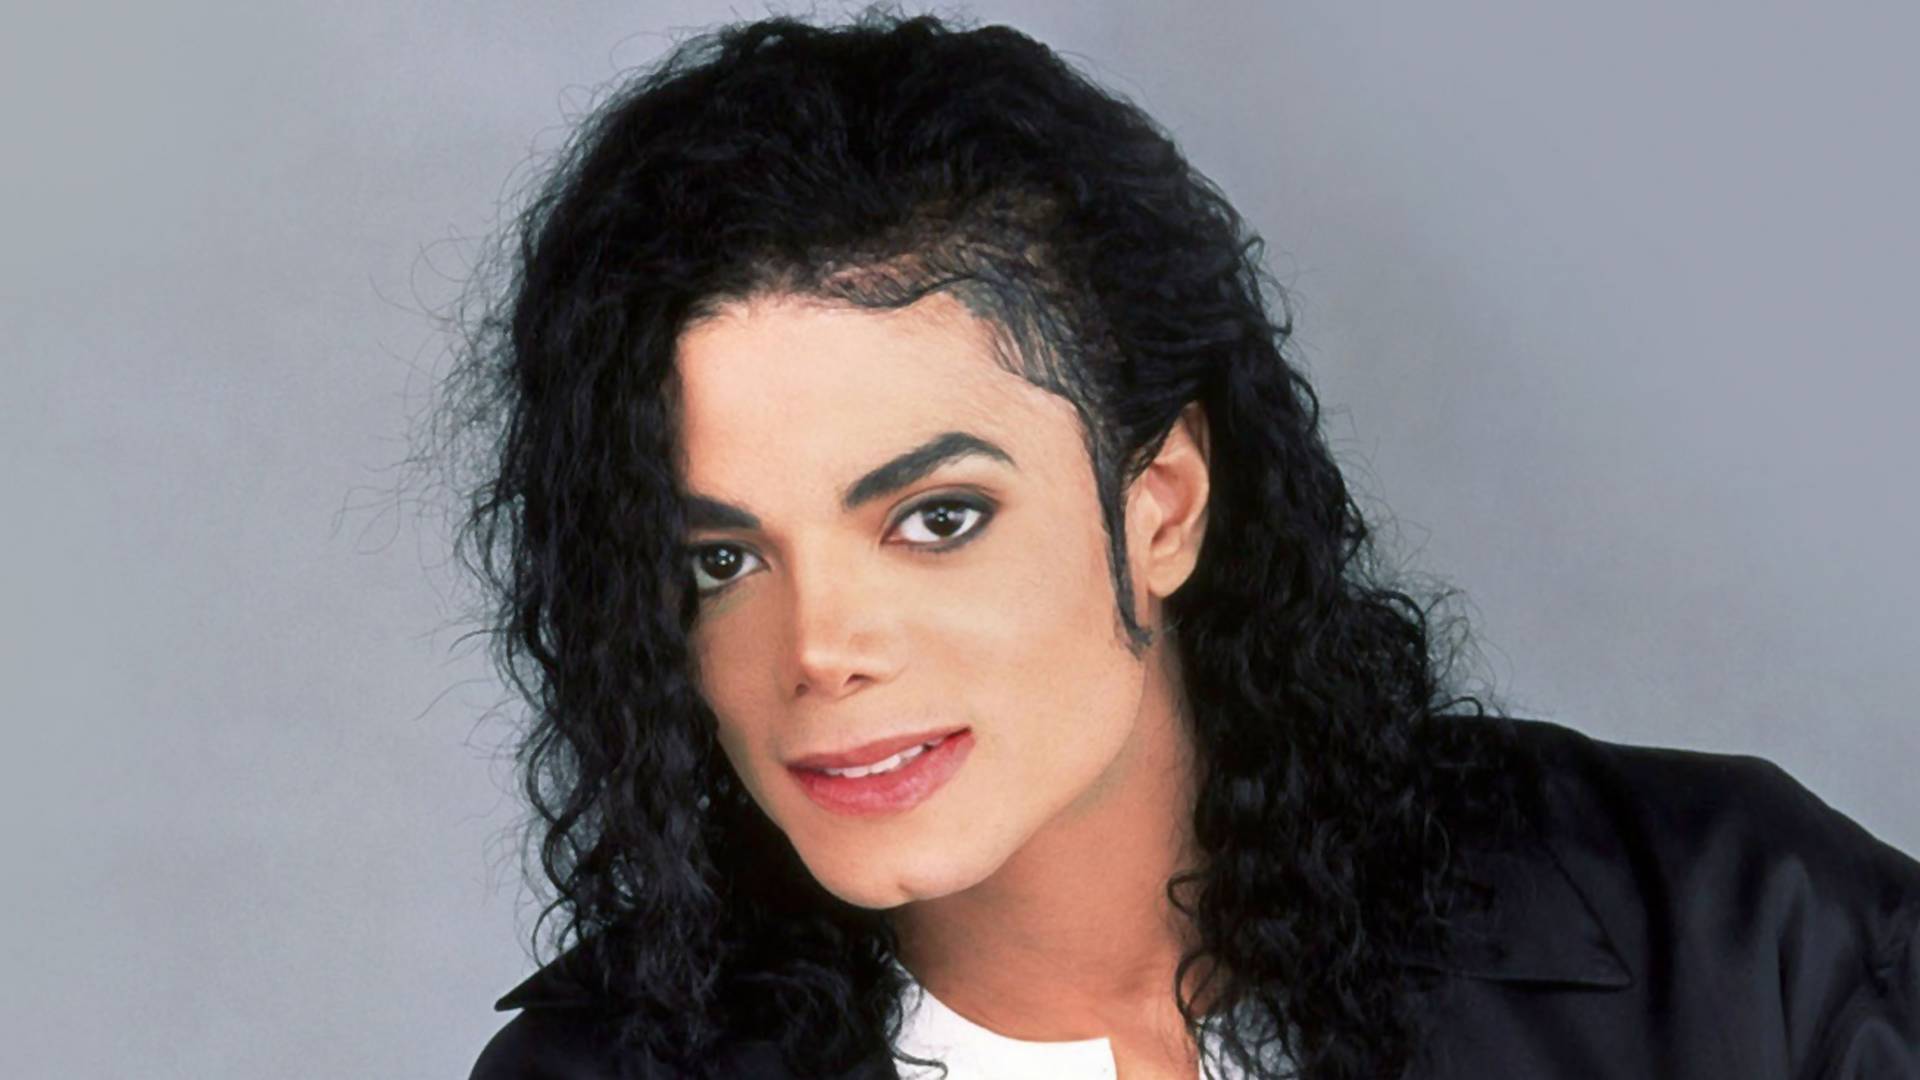 Michael Jackson ma ünnepelné 60. születésnapját - Így festett volna plasztikai műtétek nélkül